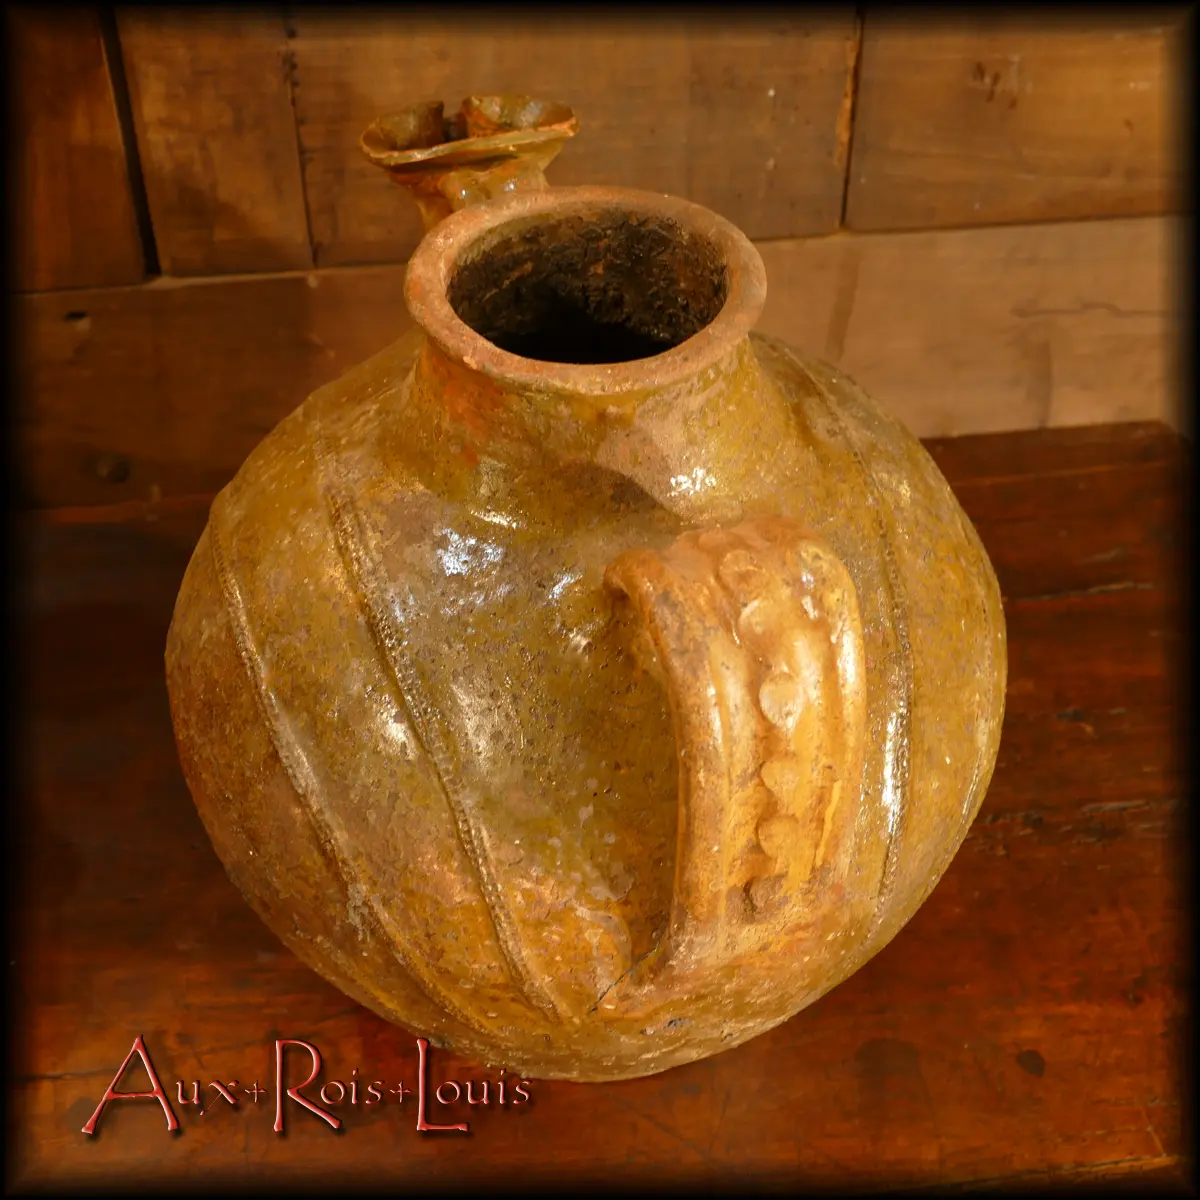 D’une teinte vert d’eau obtenue grâce à de savants mélanges d’oxydes de fer, cette jarre à huile produite au XVIIIe siècle est ornée, comme le veut la tradition du Quercy, de bandes imprimées à la molette.